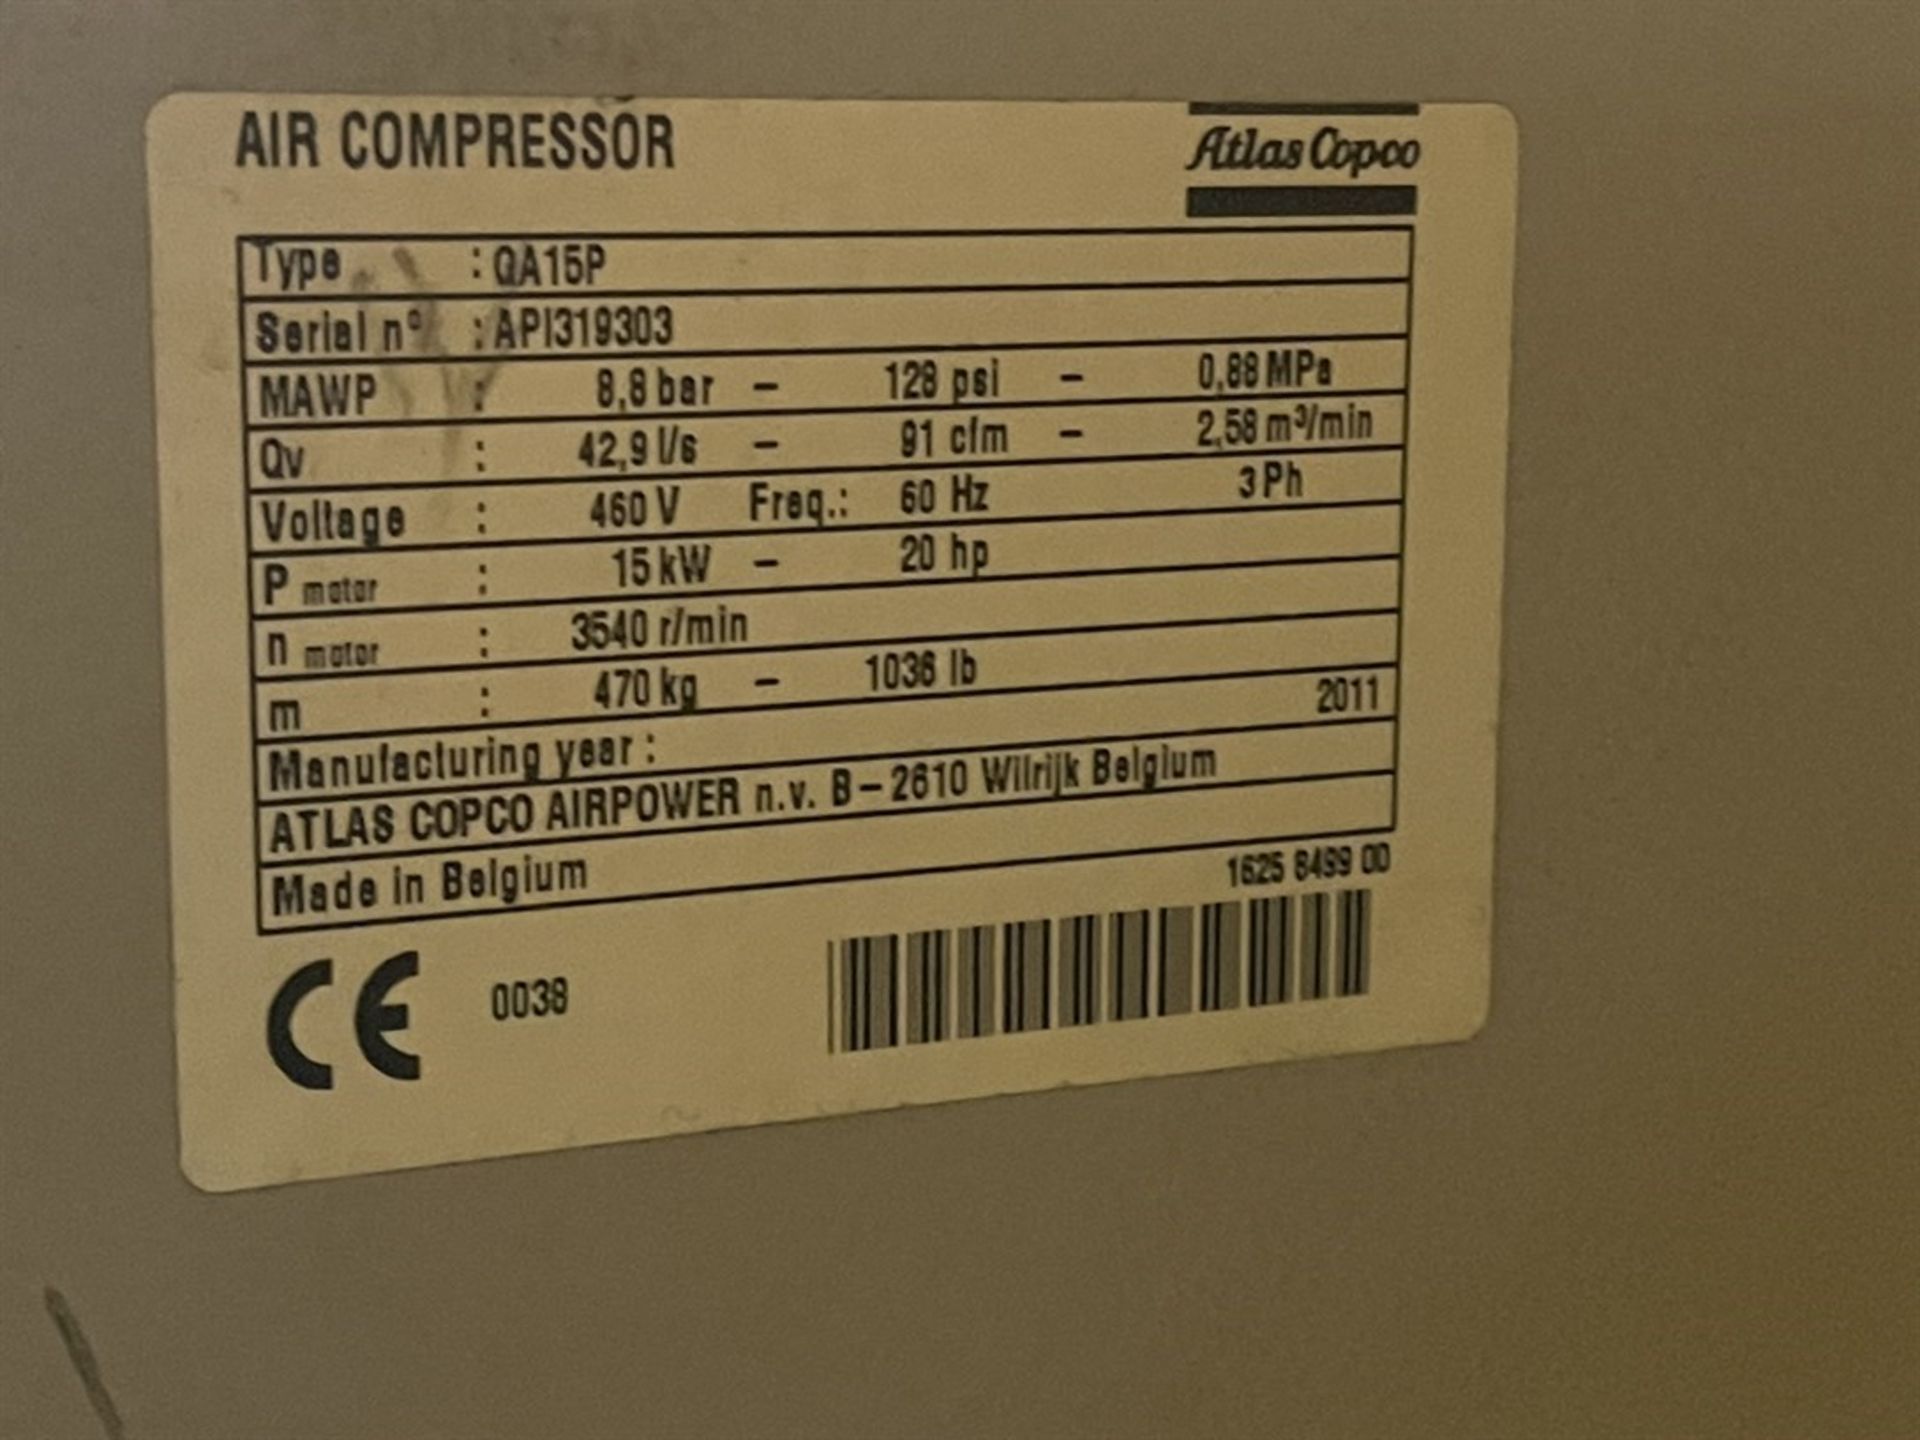 ATLAS COPCO QA15P 20 HP Air Compressor, s/n API319303, 128 PSI, (Fab Shop) - Image 3 of 3